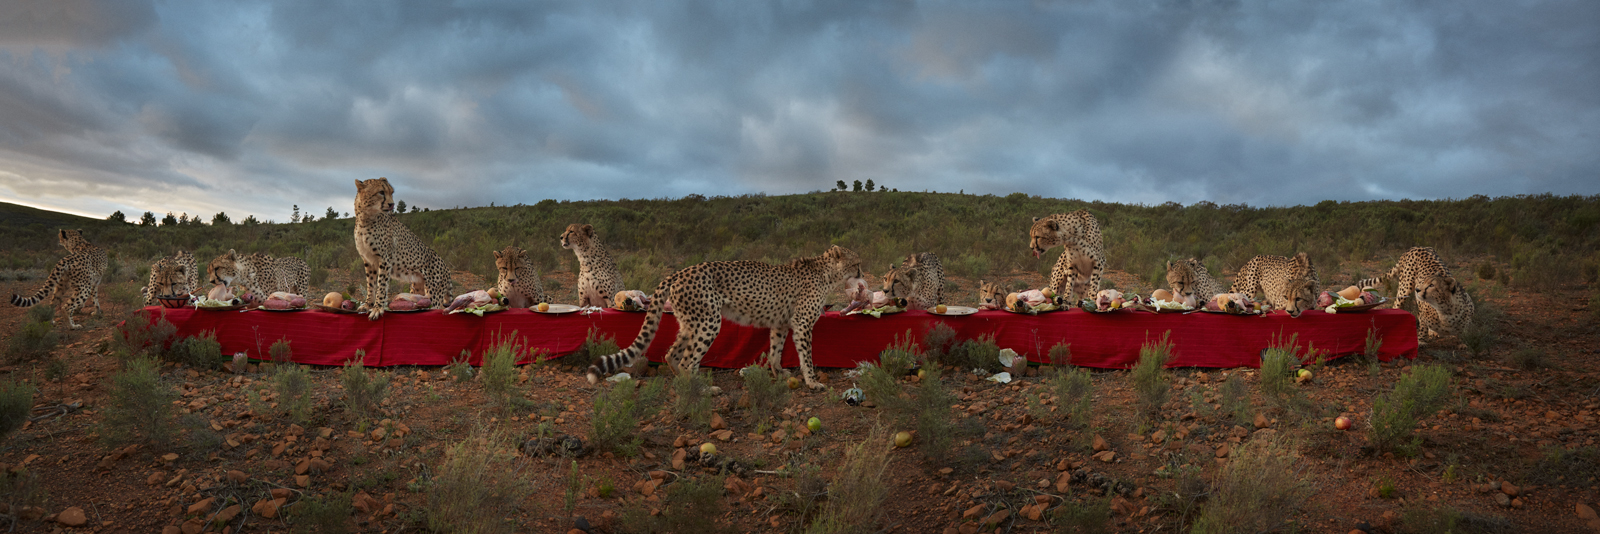  The Cheetah Feast  South Africa, 2016  10”x30” | 20”x60” | 40”x120” 